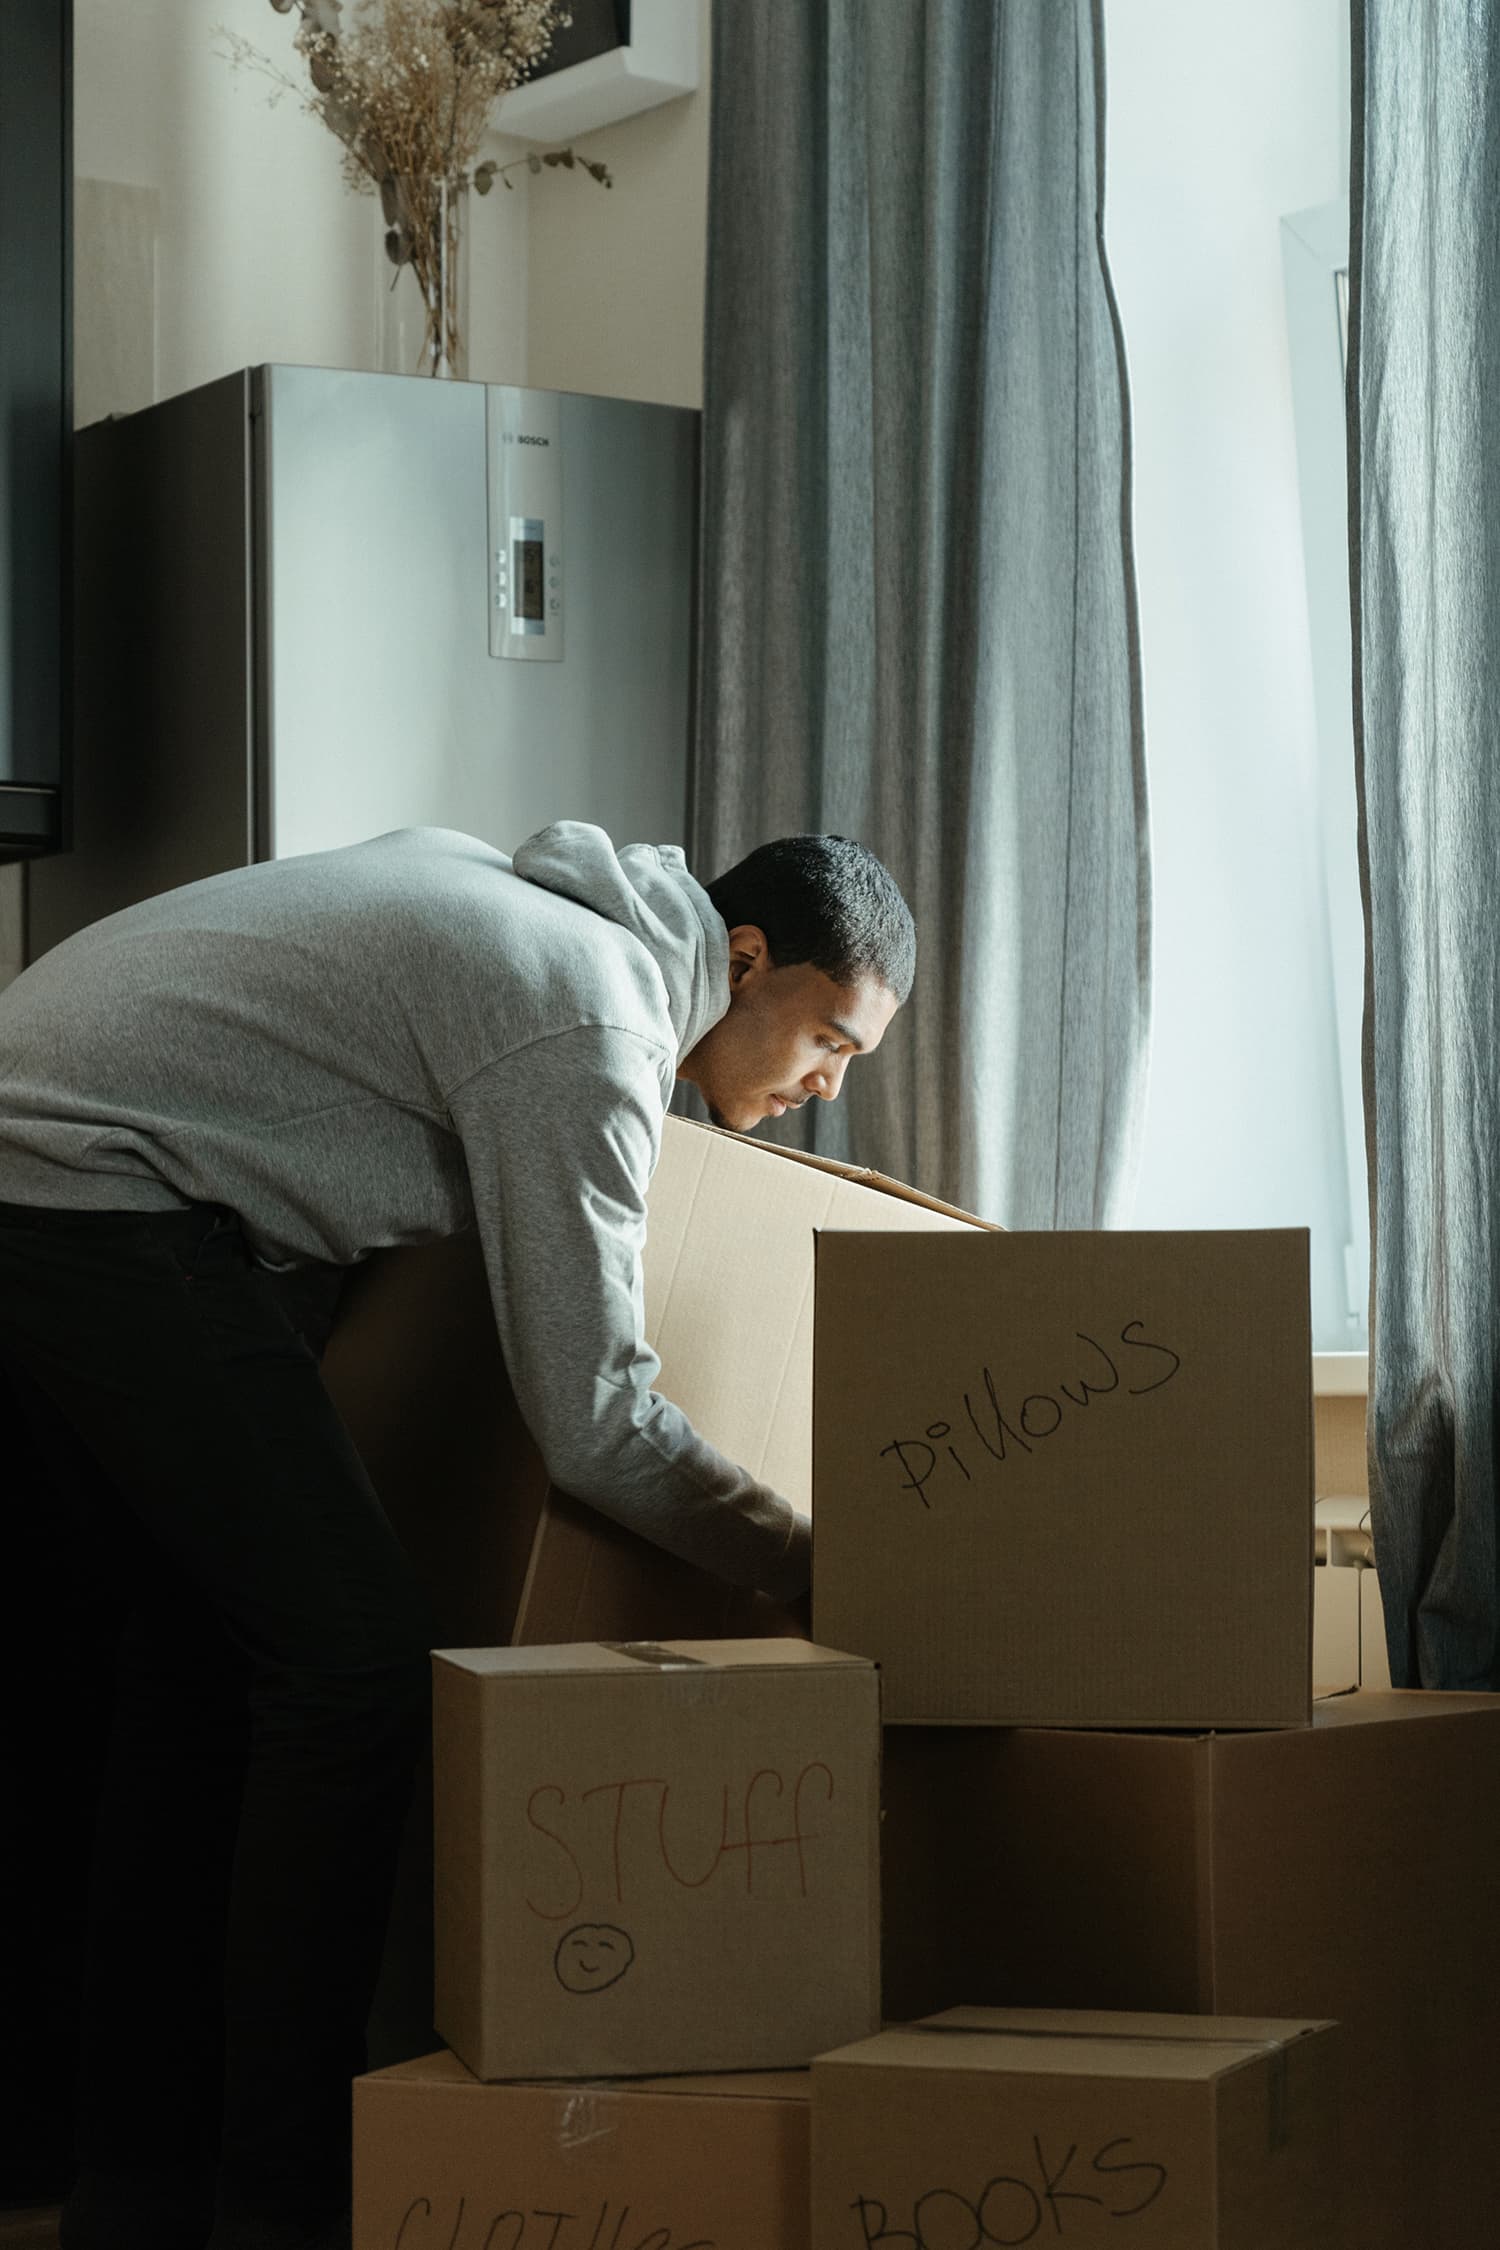 Man arranges moving boxes